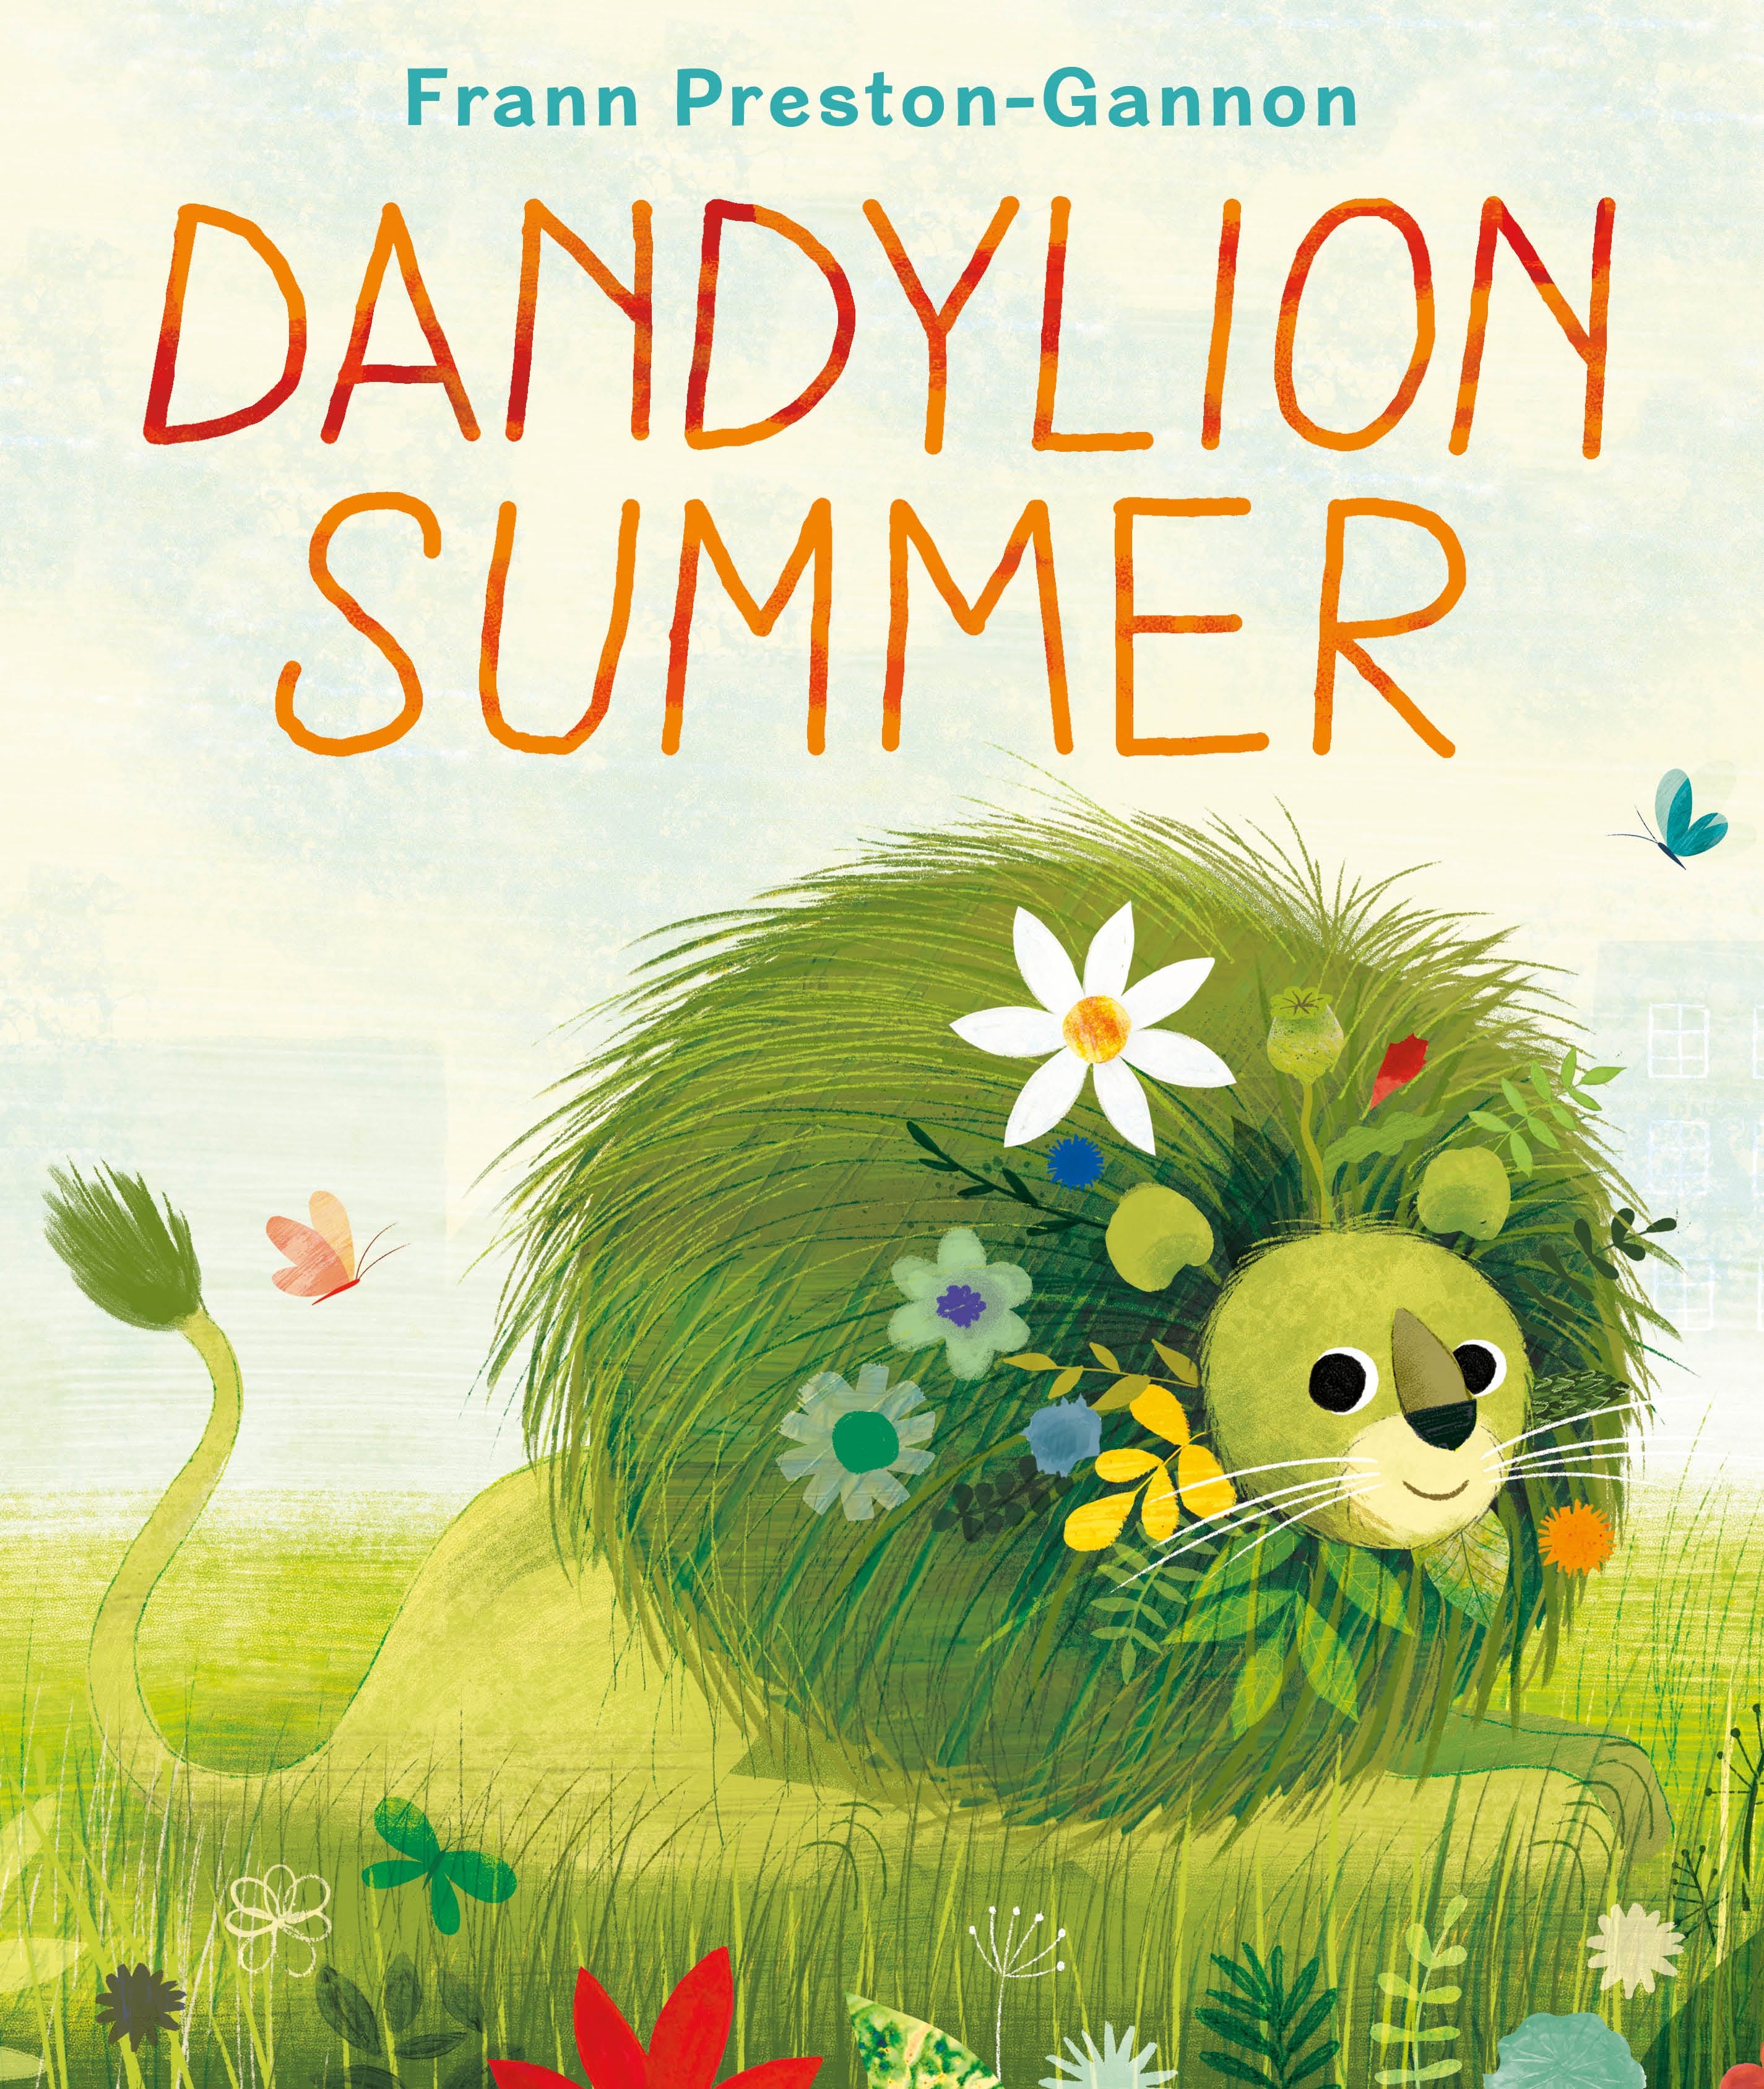 Image for "Dandylion Summer"